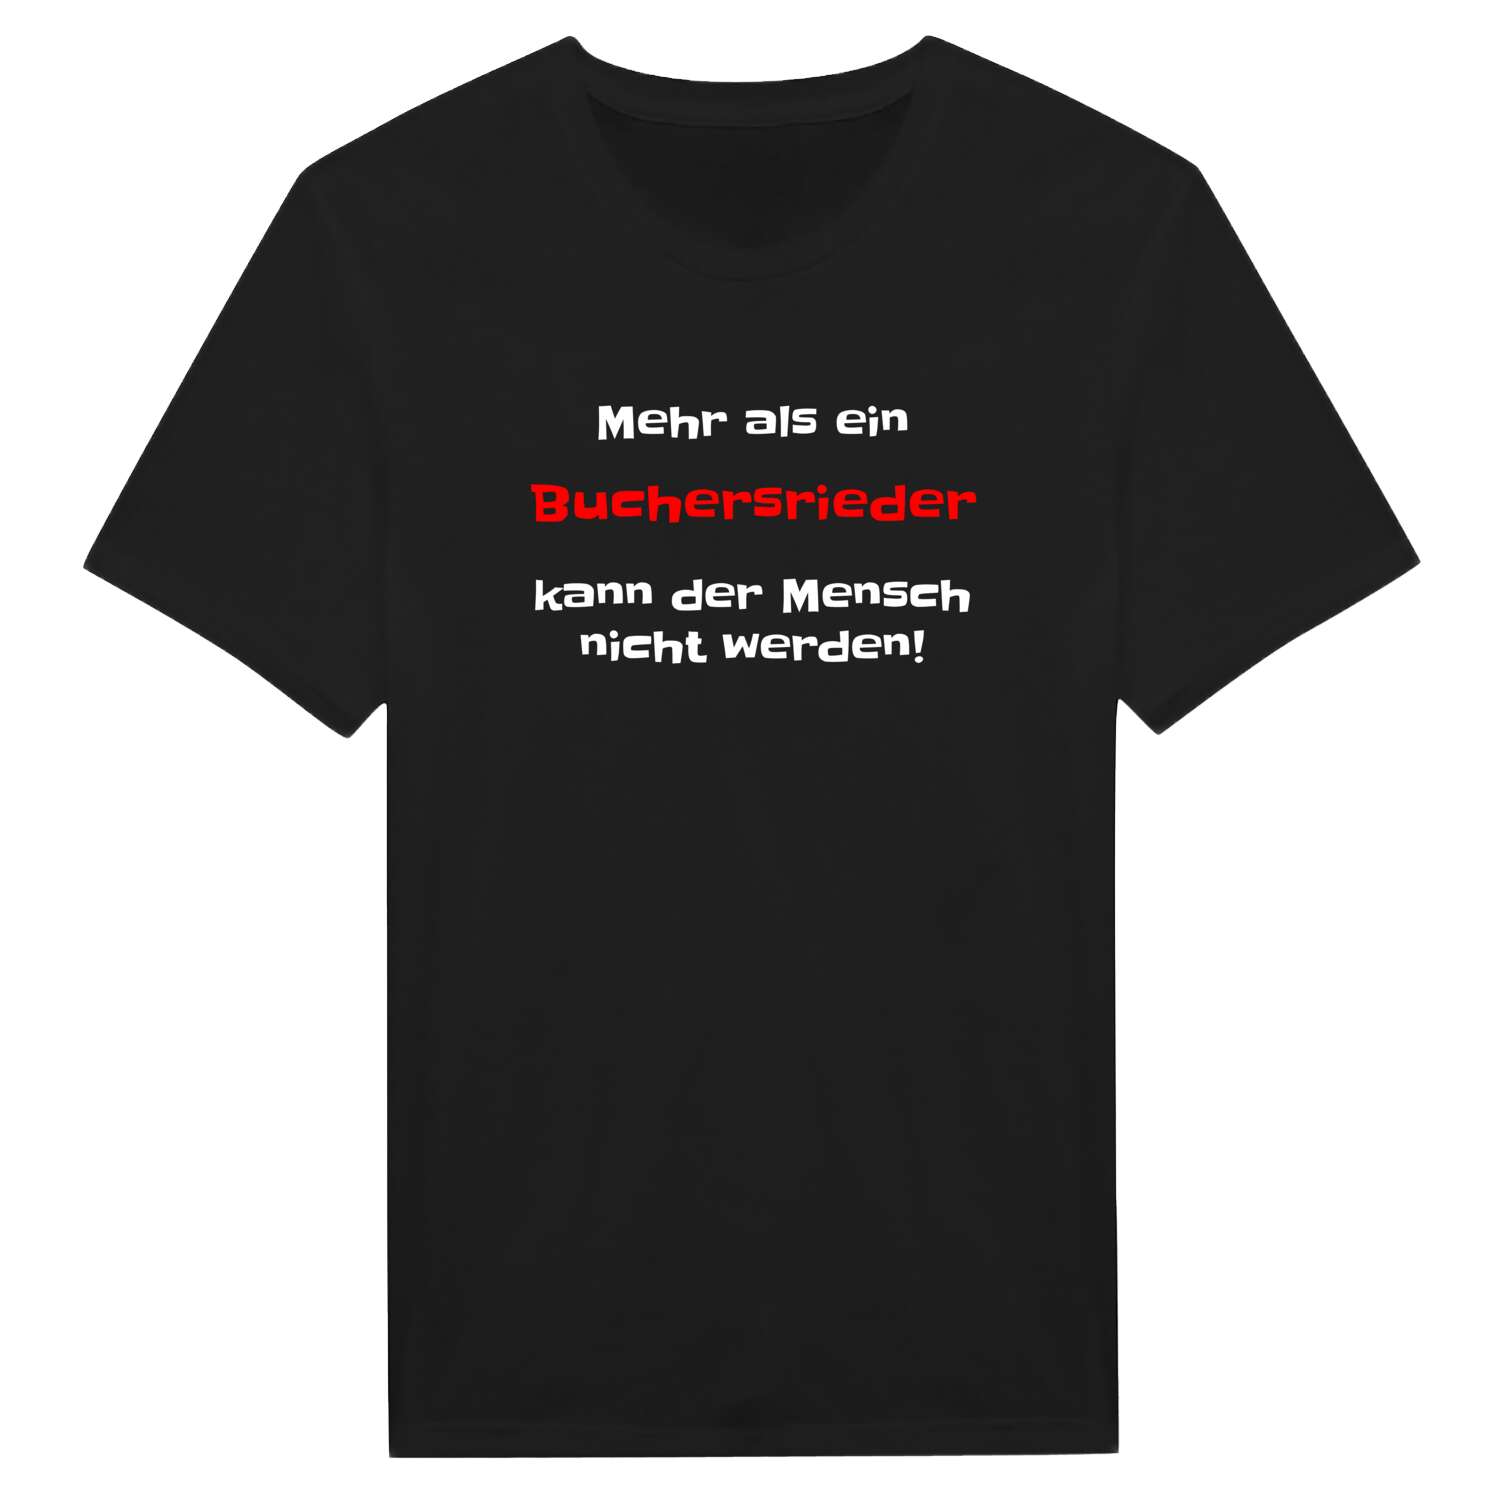 Buchersried T-Shirt »Mehr als ein«